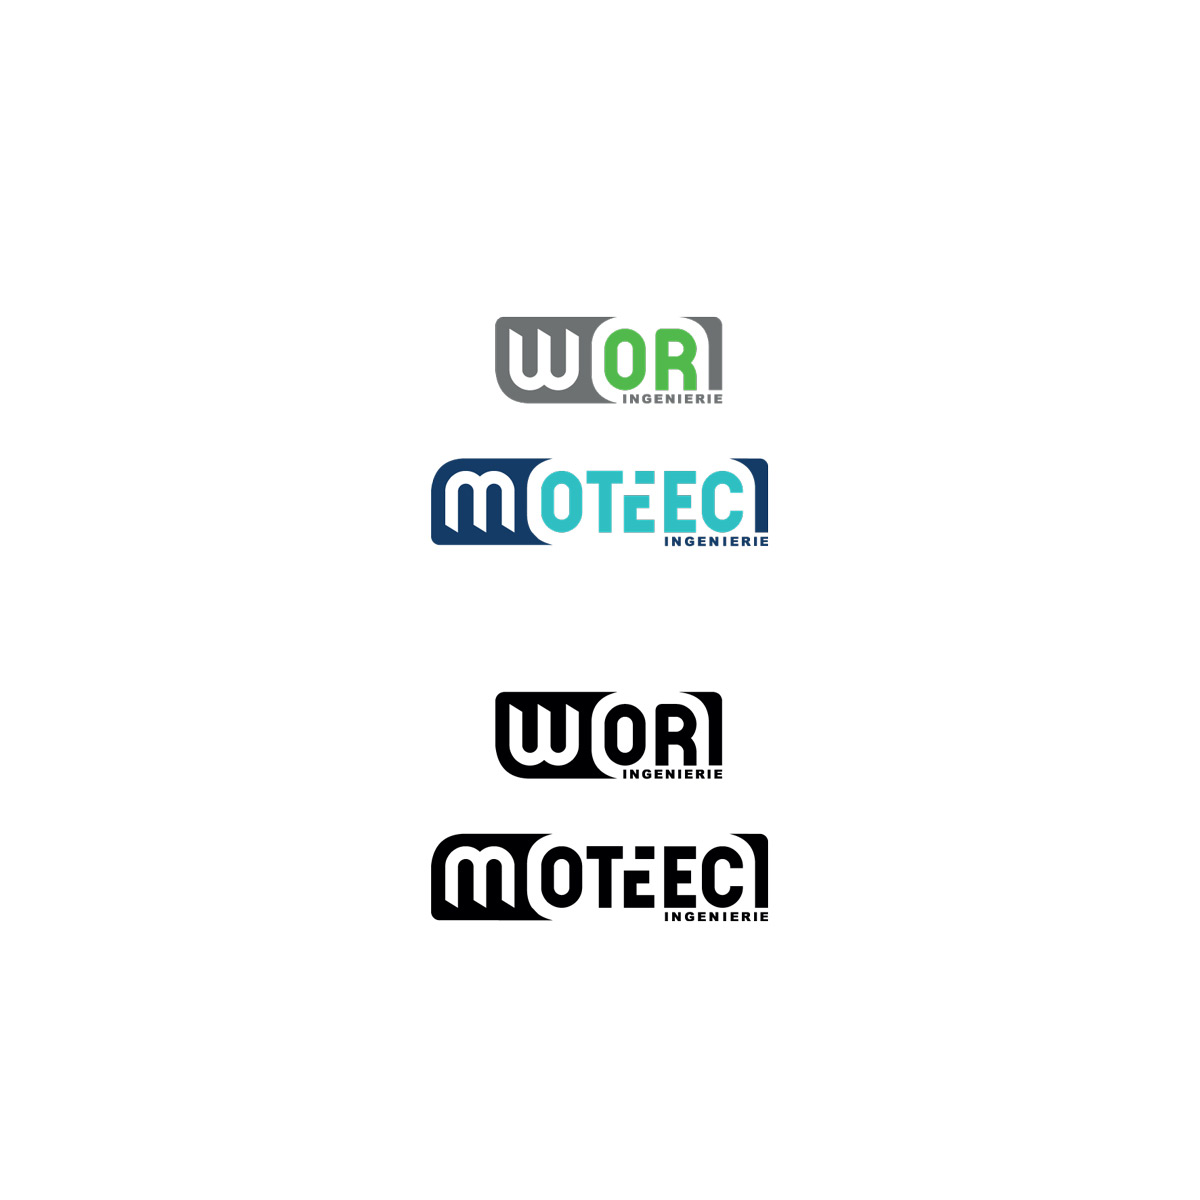 bomsky - graphisme - logos pour les entreprises WOR et MOOTEC